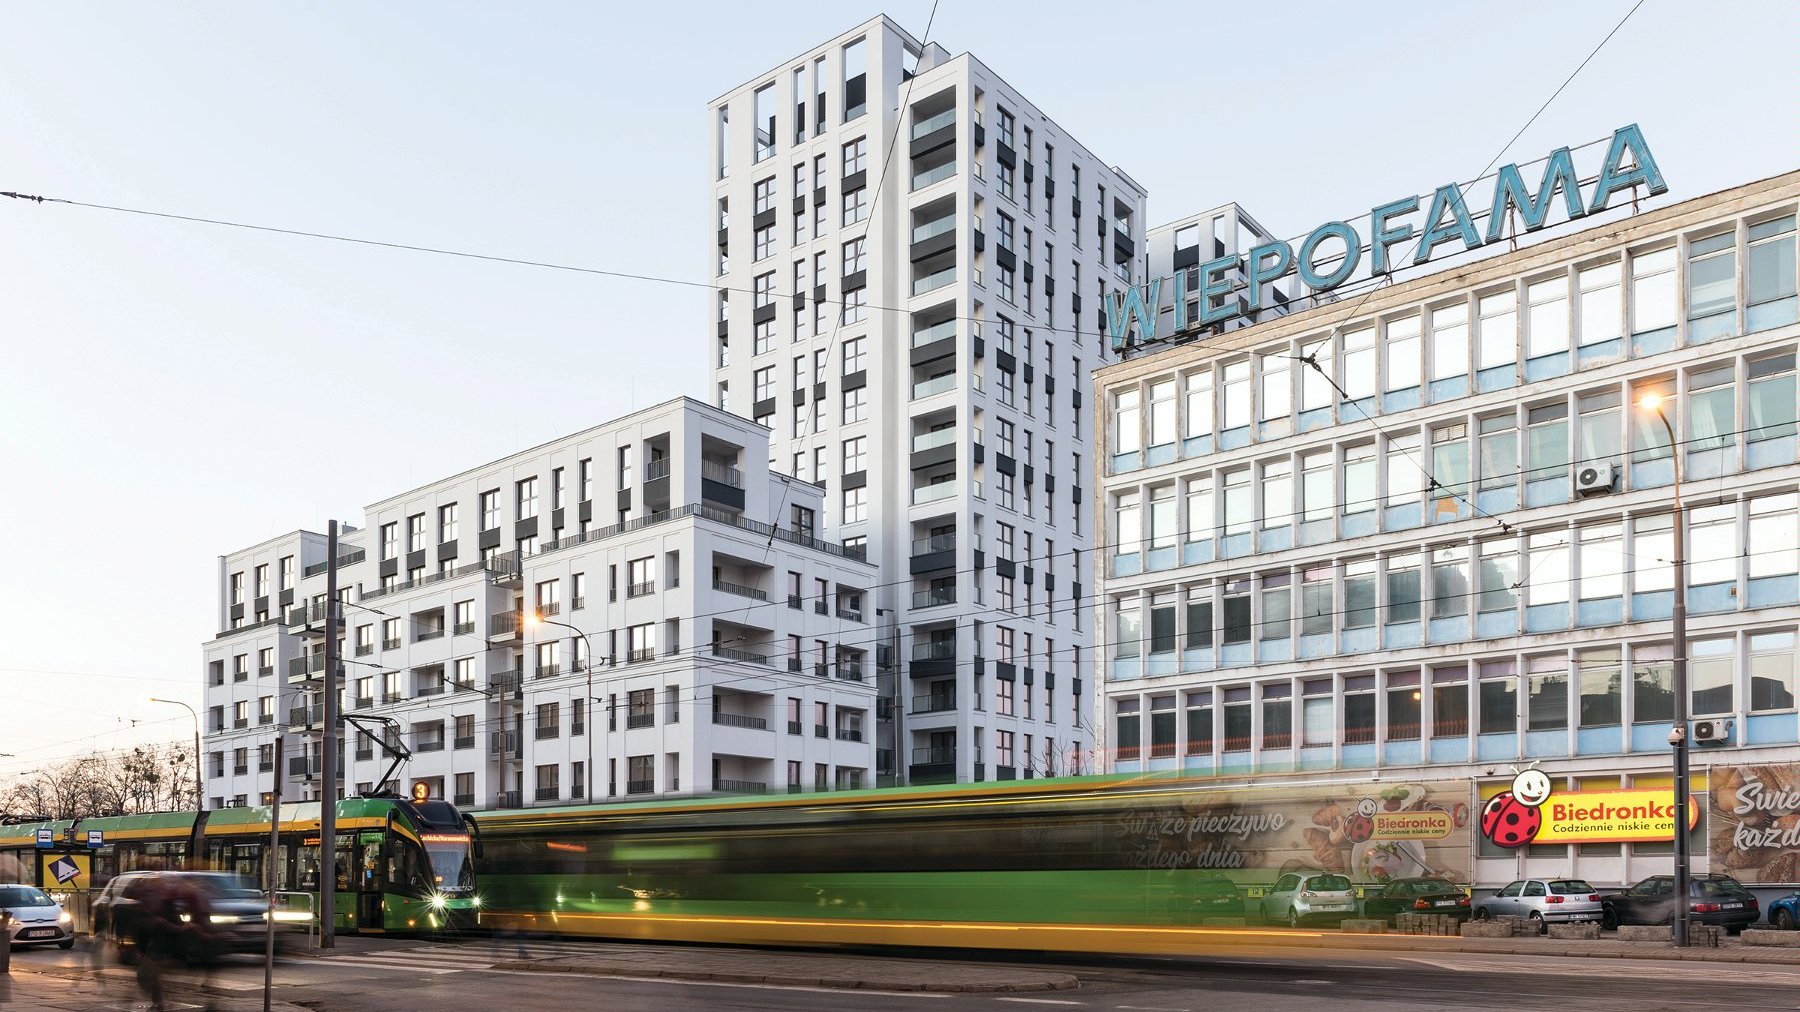 Zdjęcie przedstawia budynek "Famma". Na fotografii widaać wyraźny podział bryły na dwie części - niską, uzupełniającą pierzeję, oraz kilkunastopiętrową, wysoką. Na pierwszym planie widać przejeżdzające tramwaje.